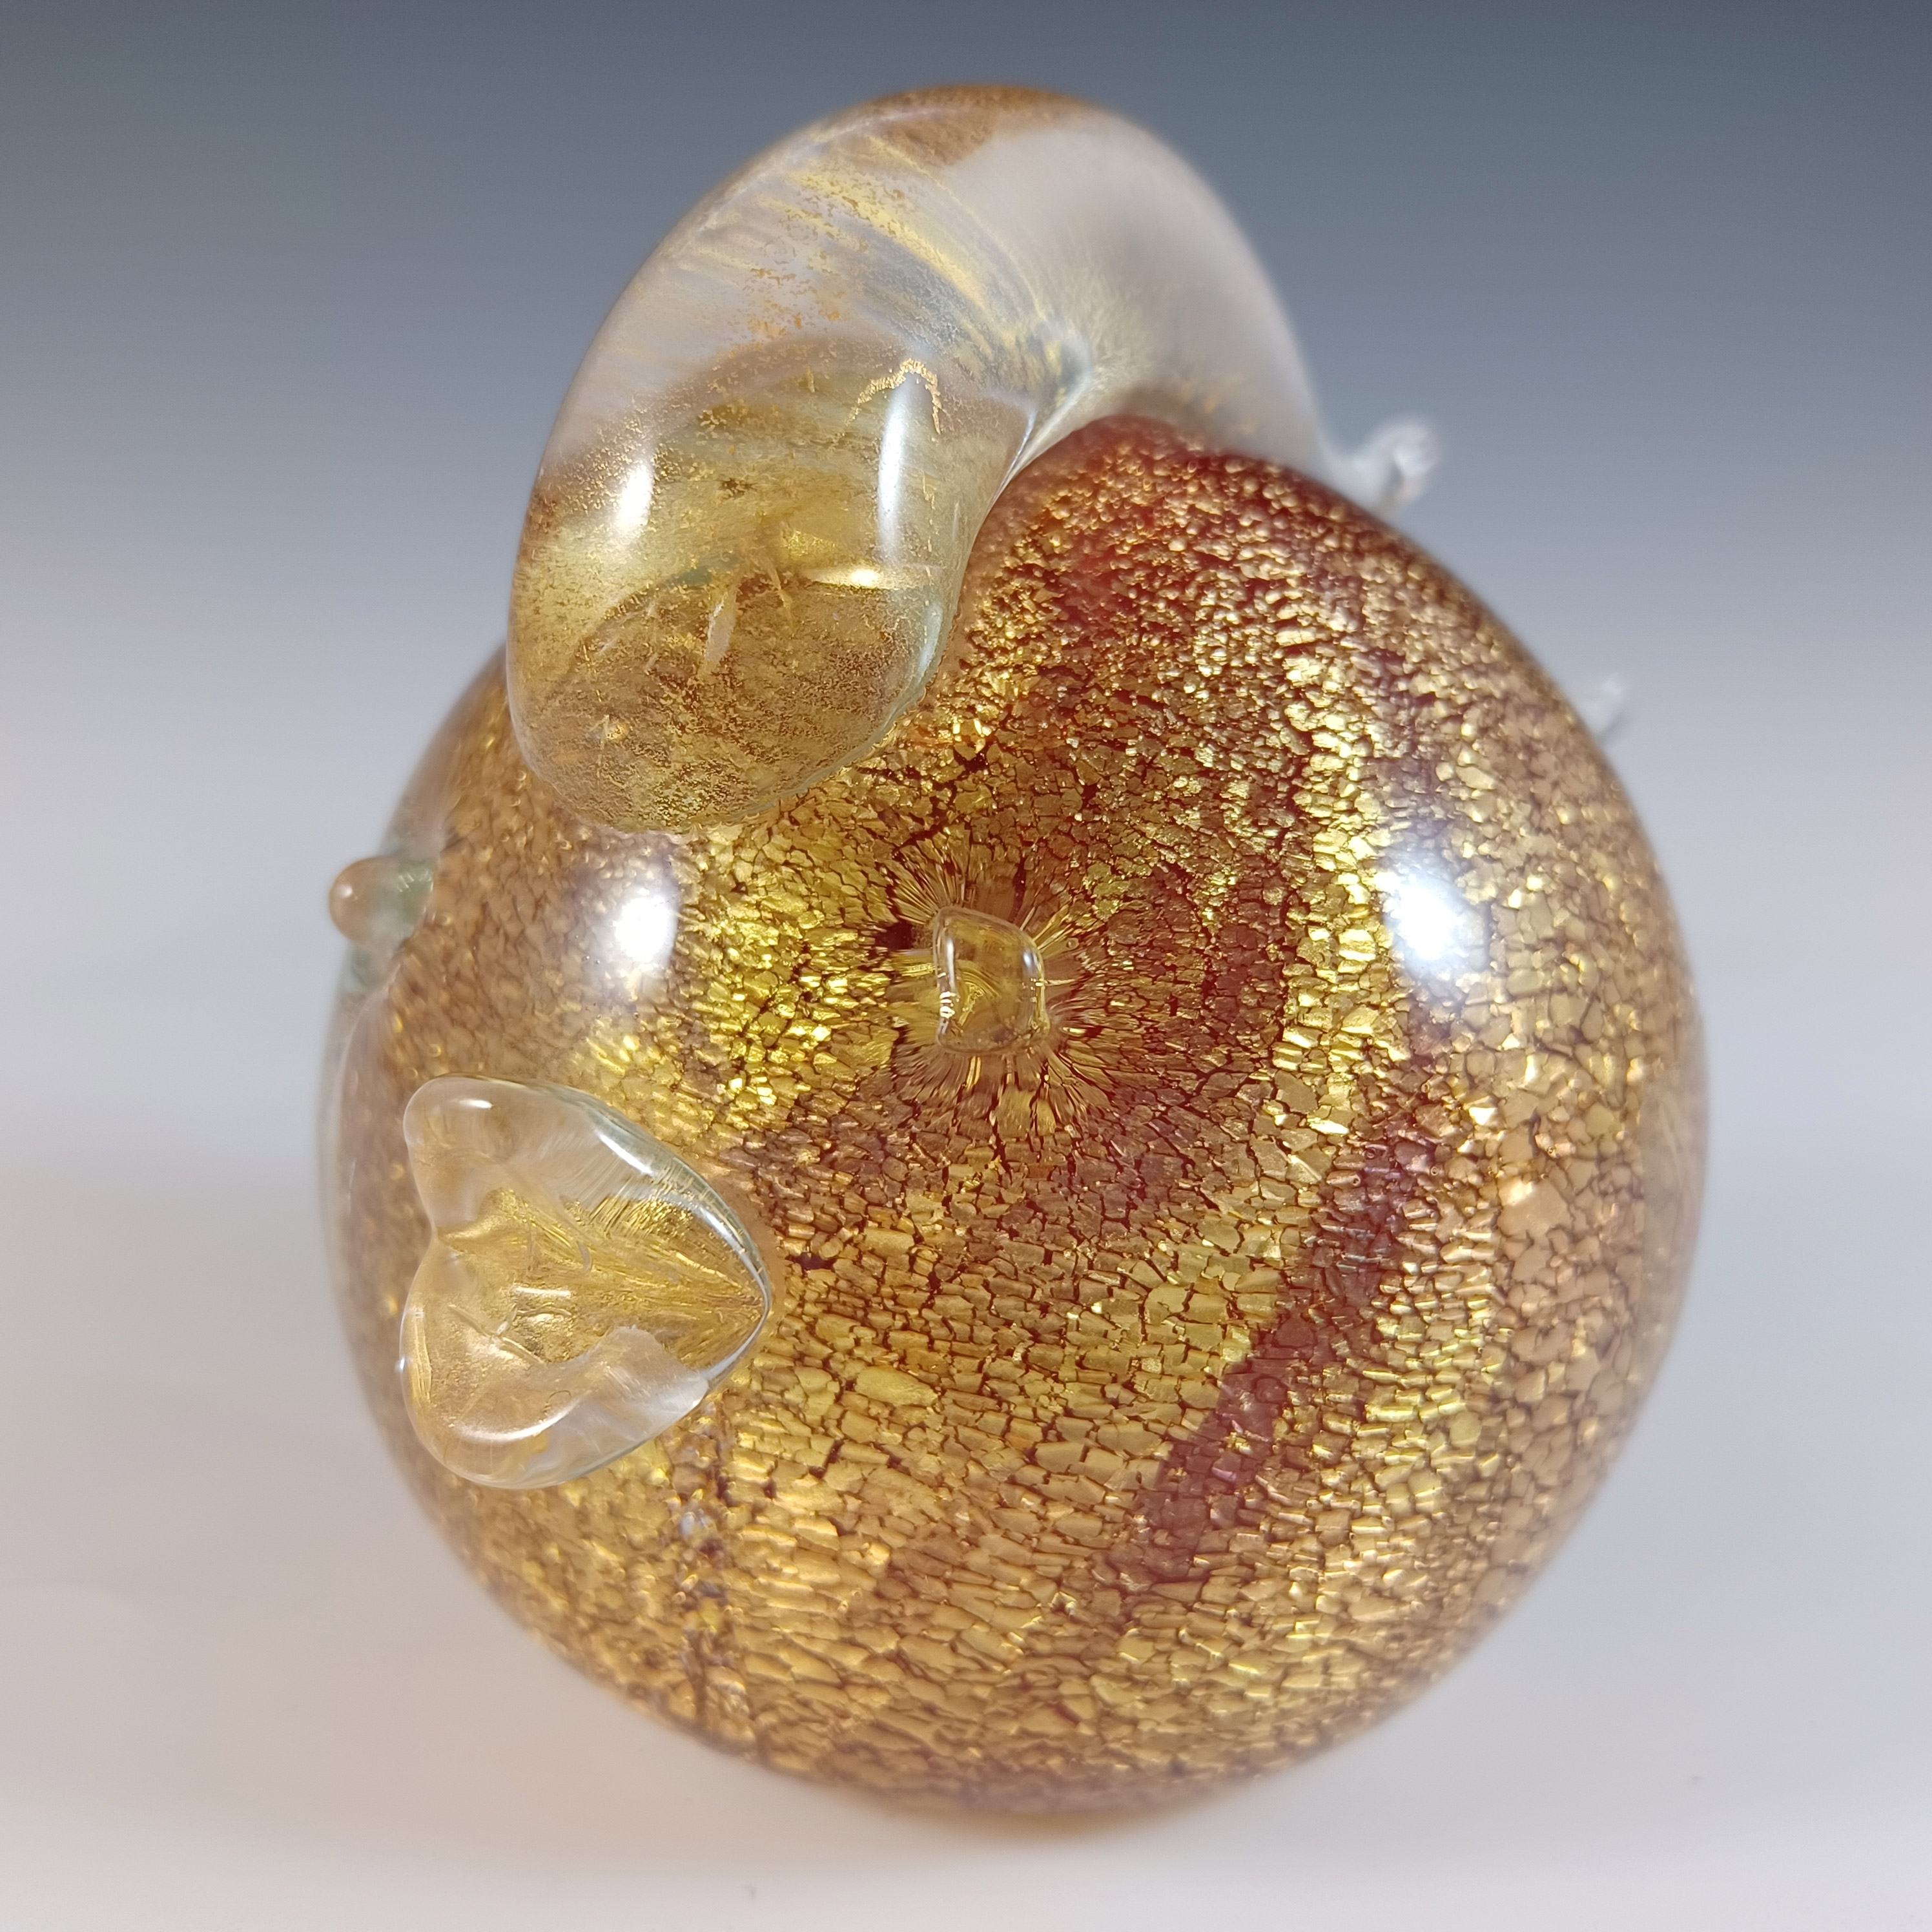 LABELLED Gambaro & Poggi Murano Gold Leaf Glass Fish Sculpture - Click Image to Close